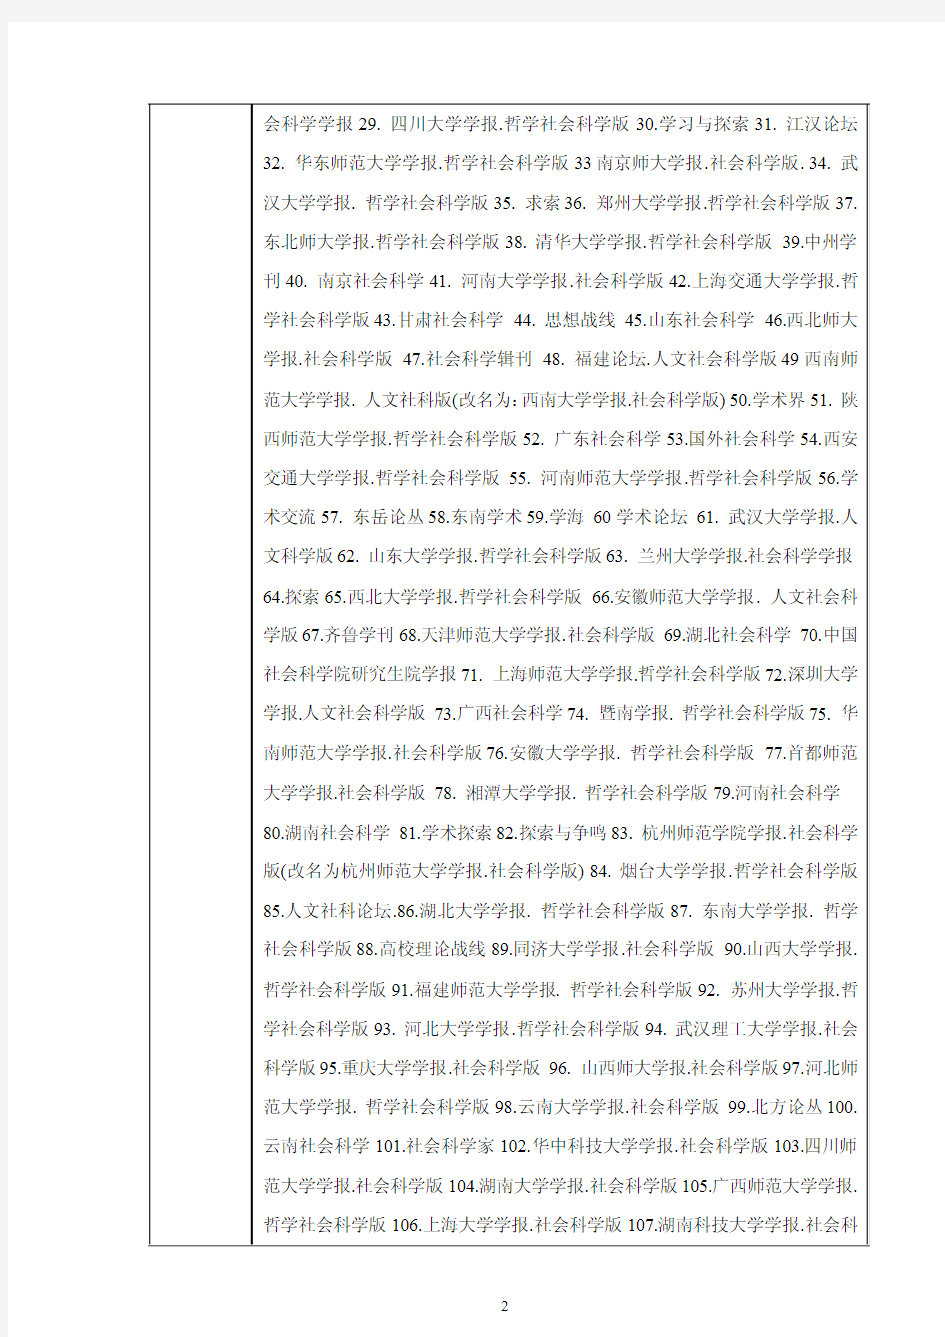 中文核心期刊目录总览(2011年第六版)